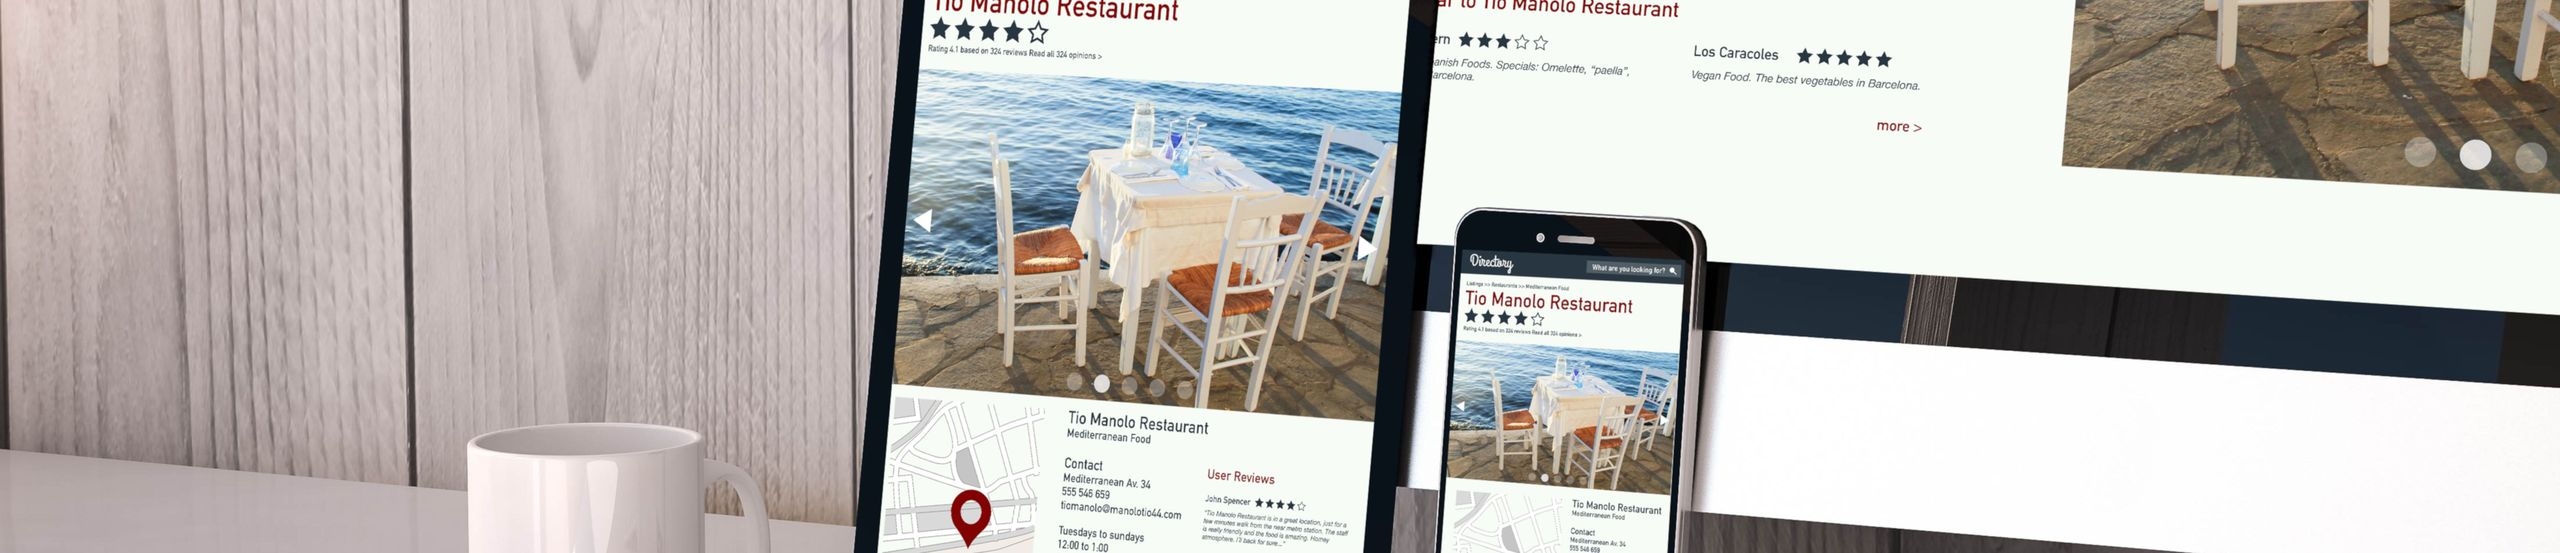 Desktop-Bildschirm, Tablet und Handy zeigen die gleiche Webseite zu einer Restaurant-Bewertung in unterschiedlicher Größe